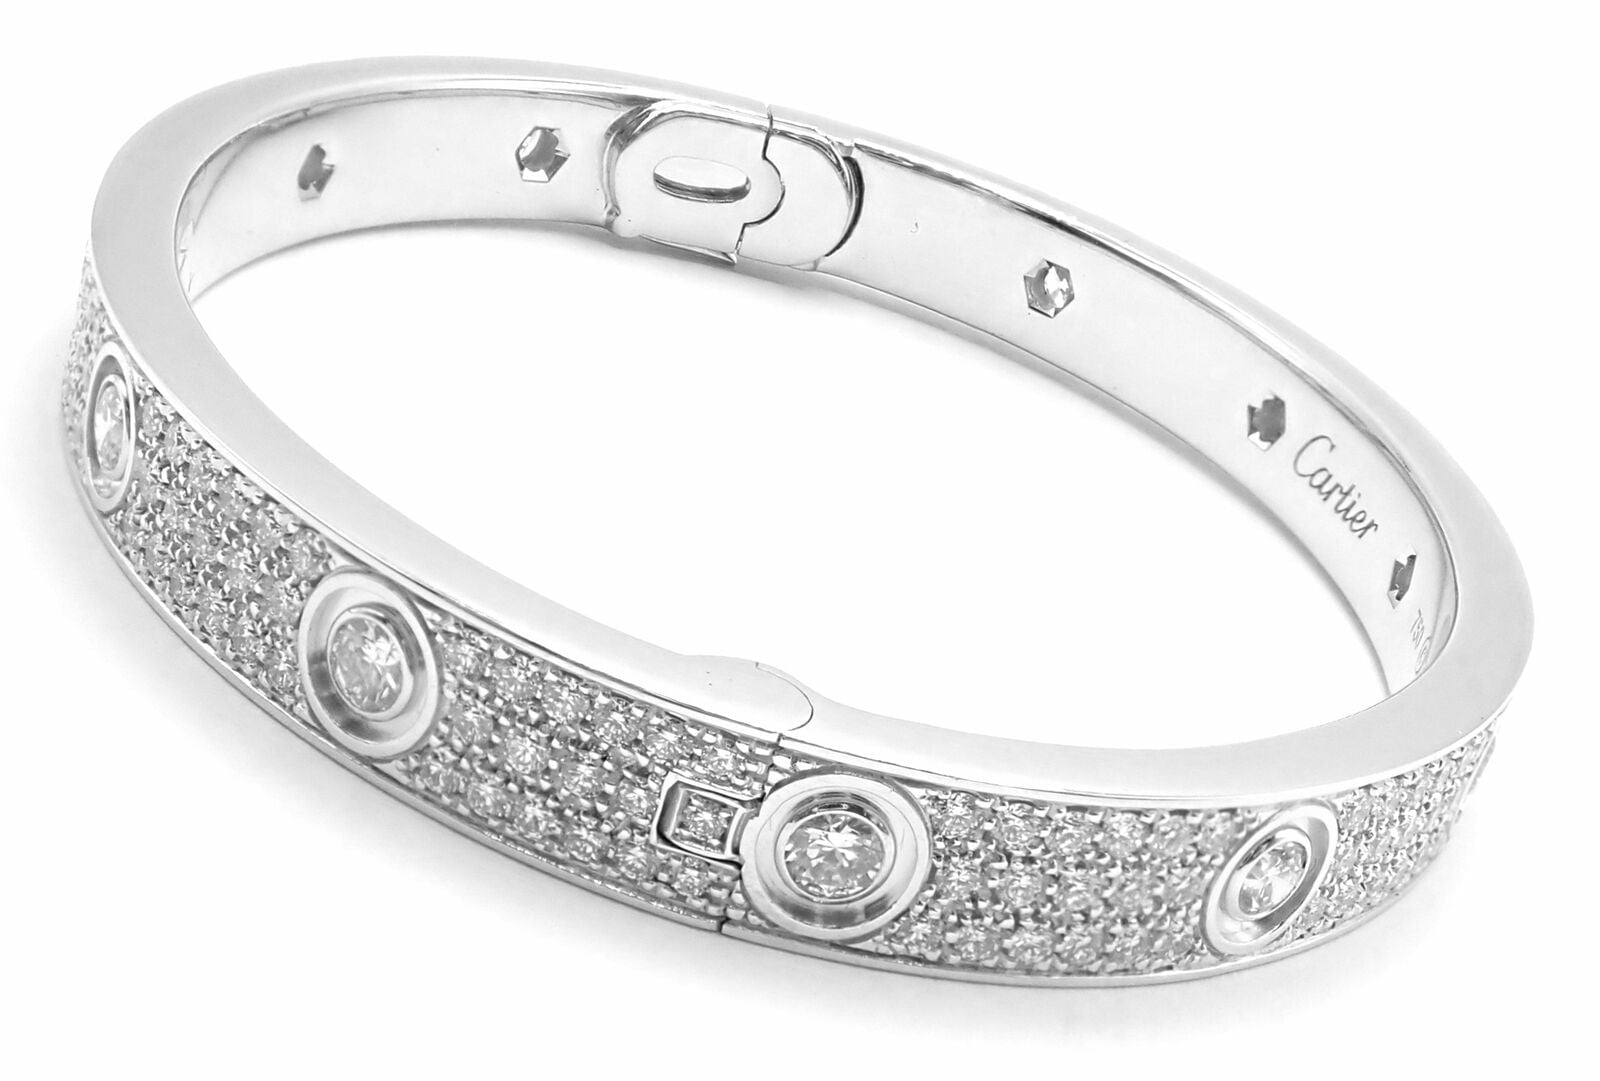 Authentic! Cartier Love 18K White Gold Diamond Pave Bangle Bracelet Sz 17 Paper